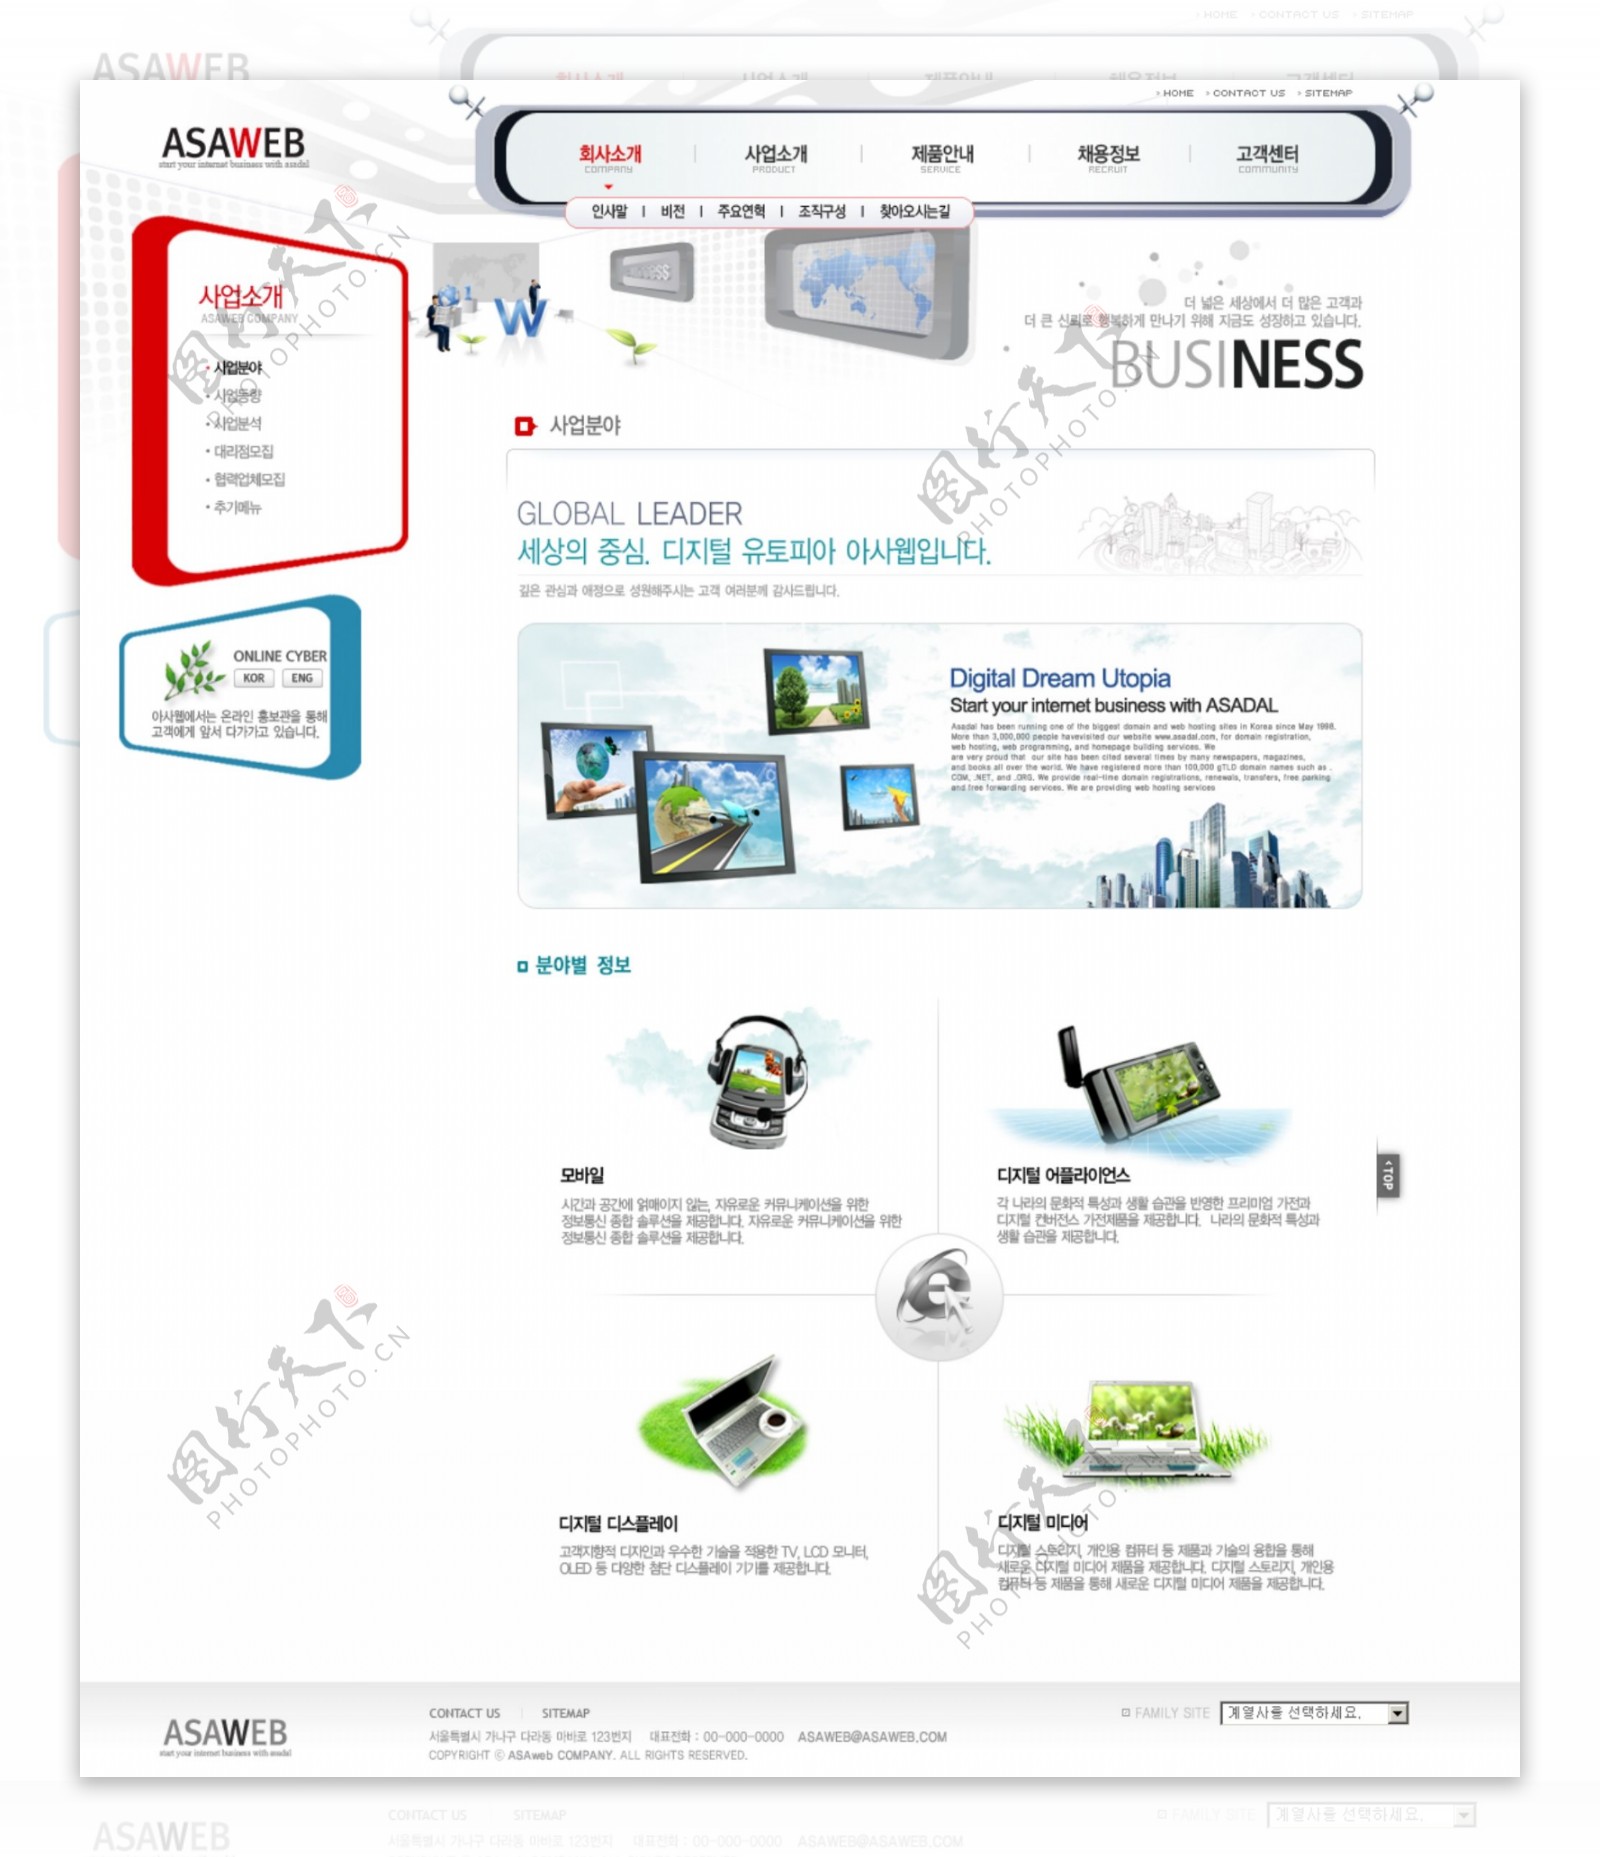 商务网络企业展示网页模板